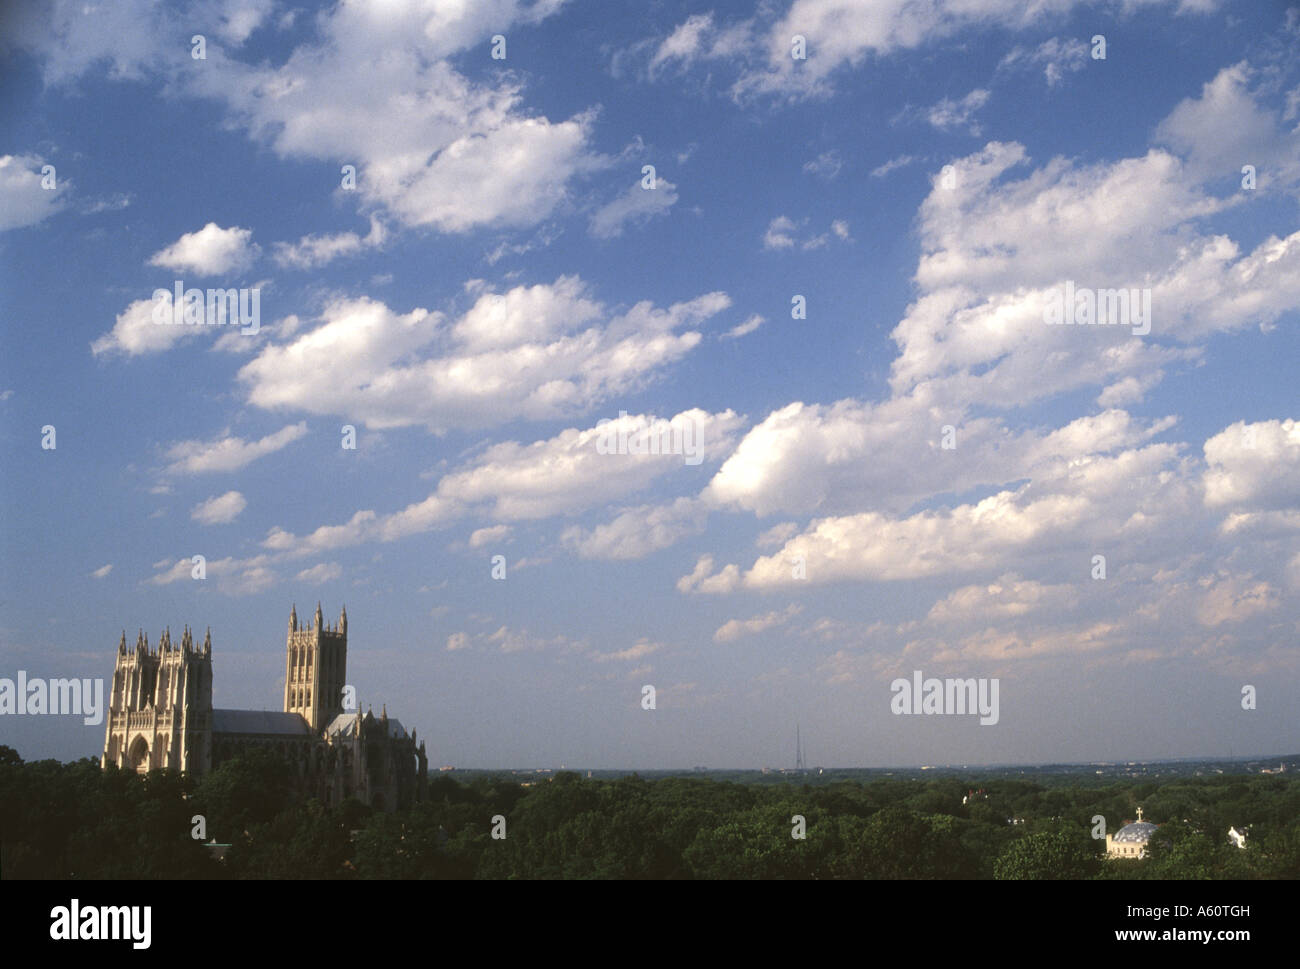 Washington National Cathedral, Washington, D.C. Stock Photo